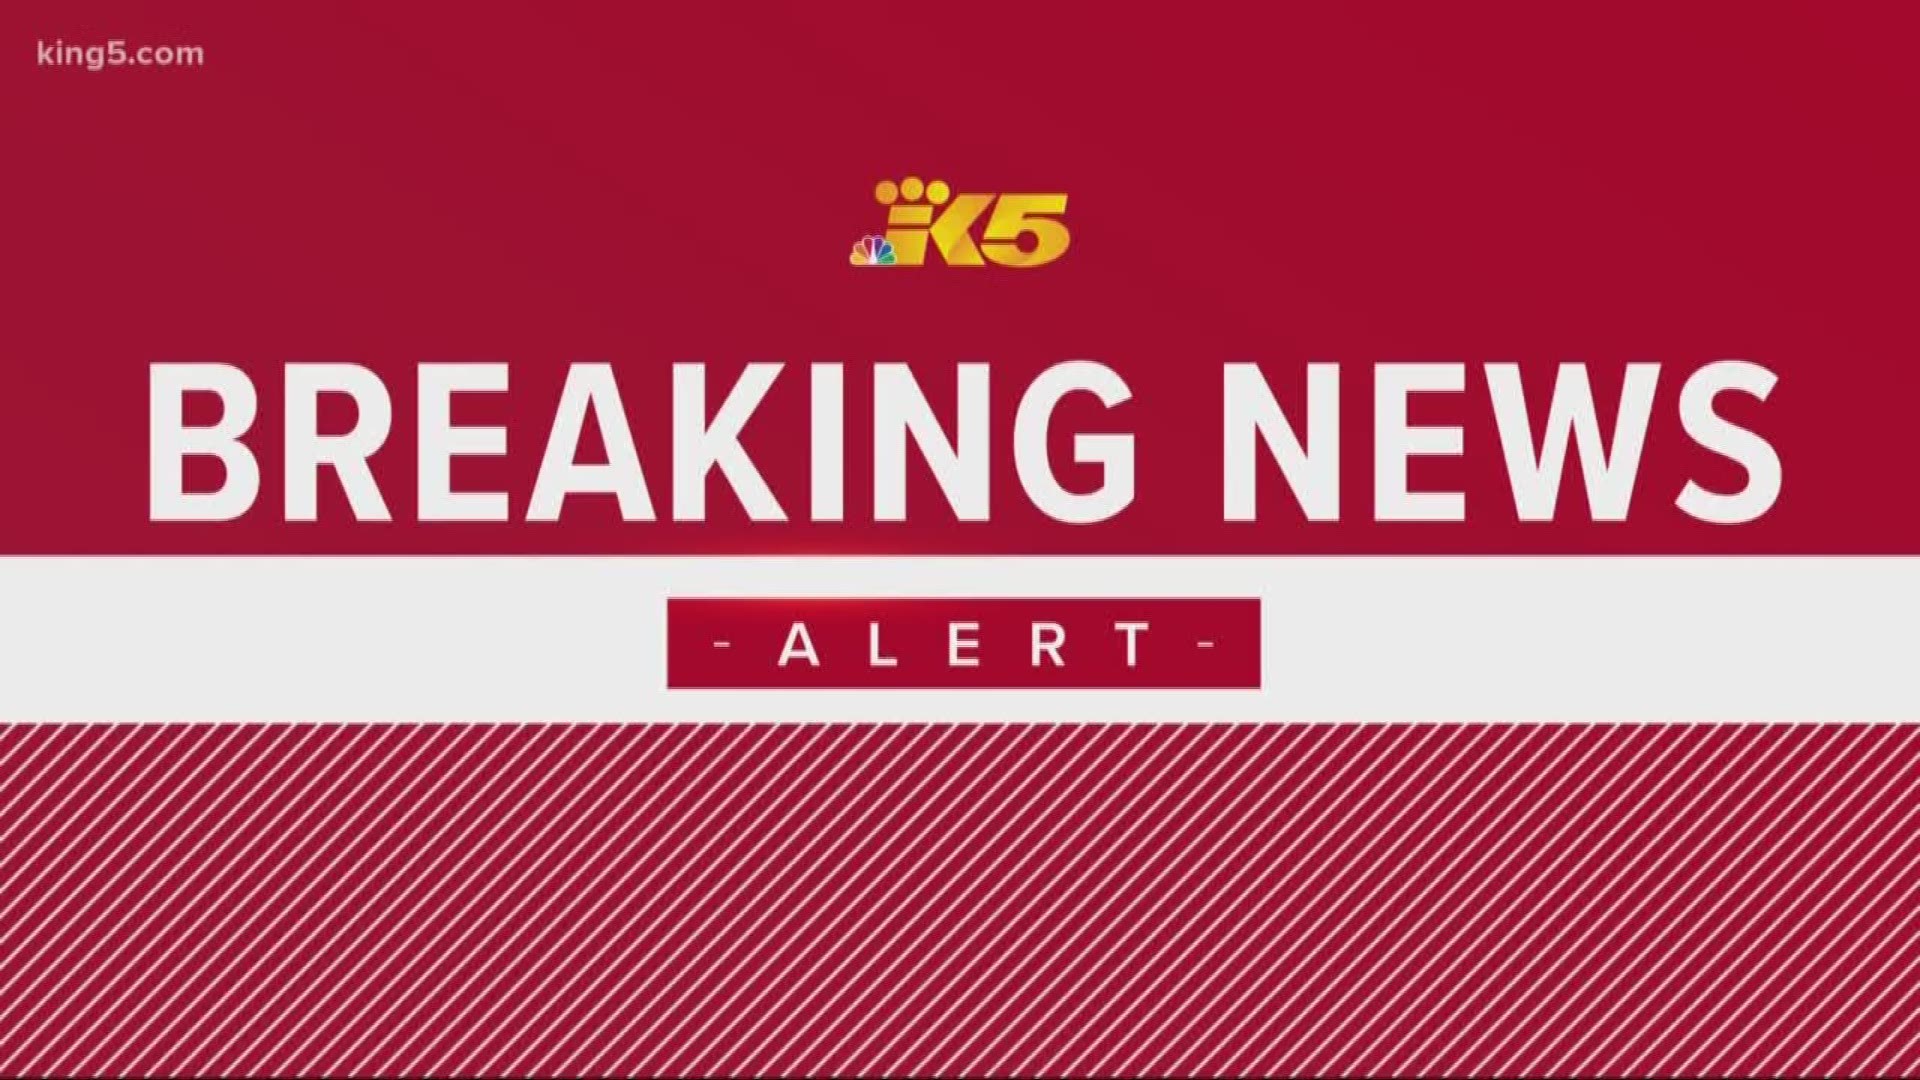 Four children have been found safe in Cheney, WA.